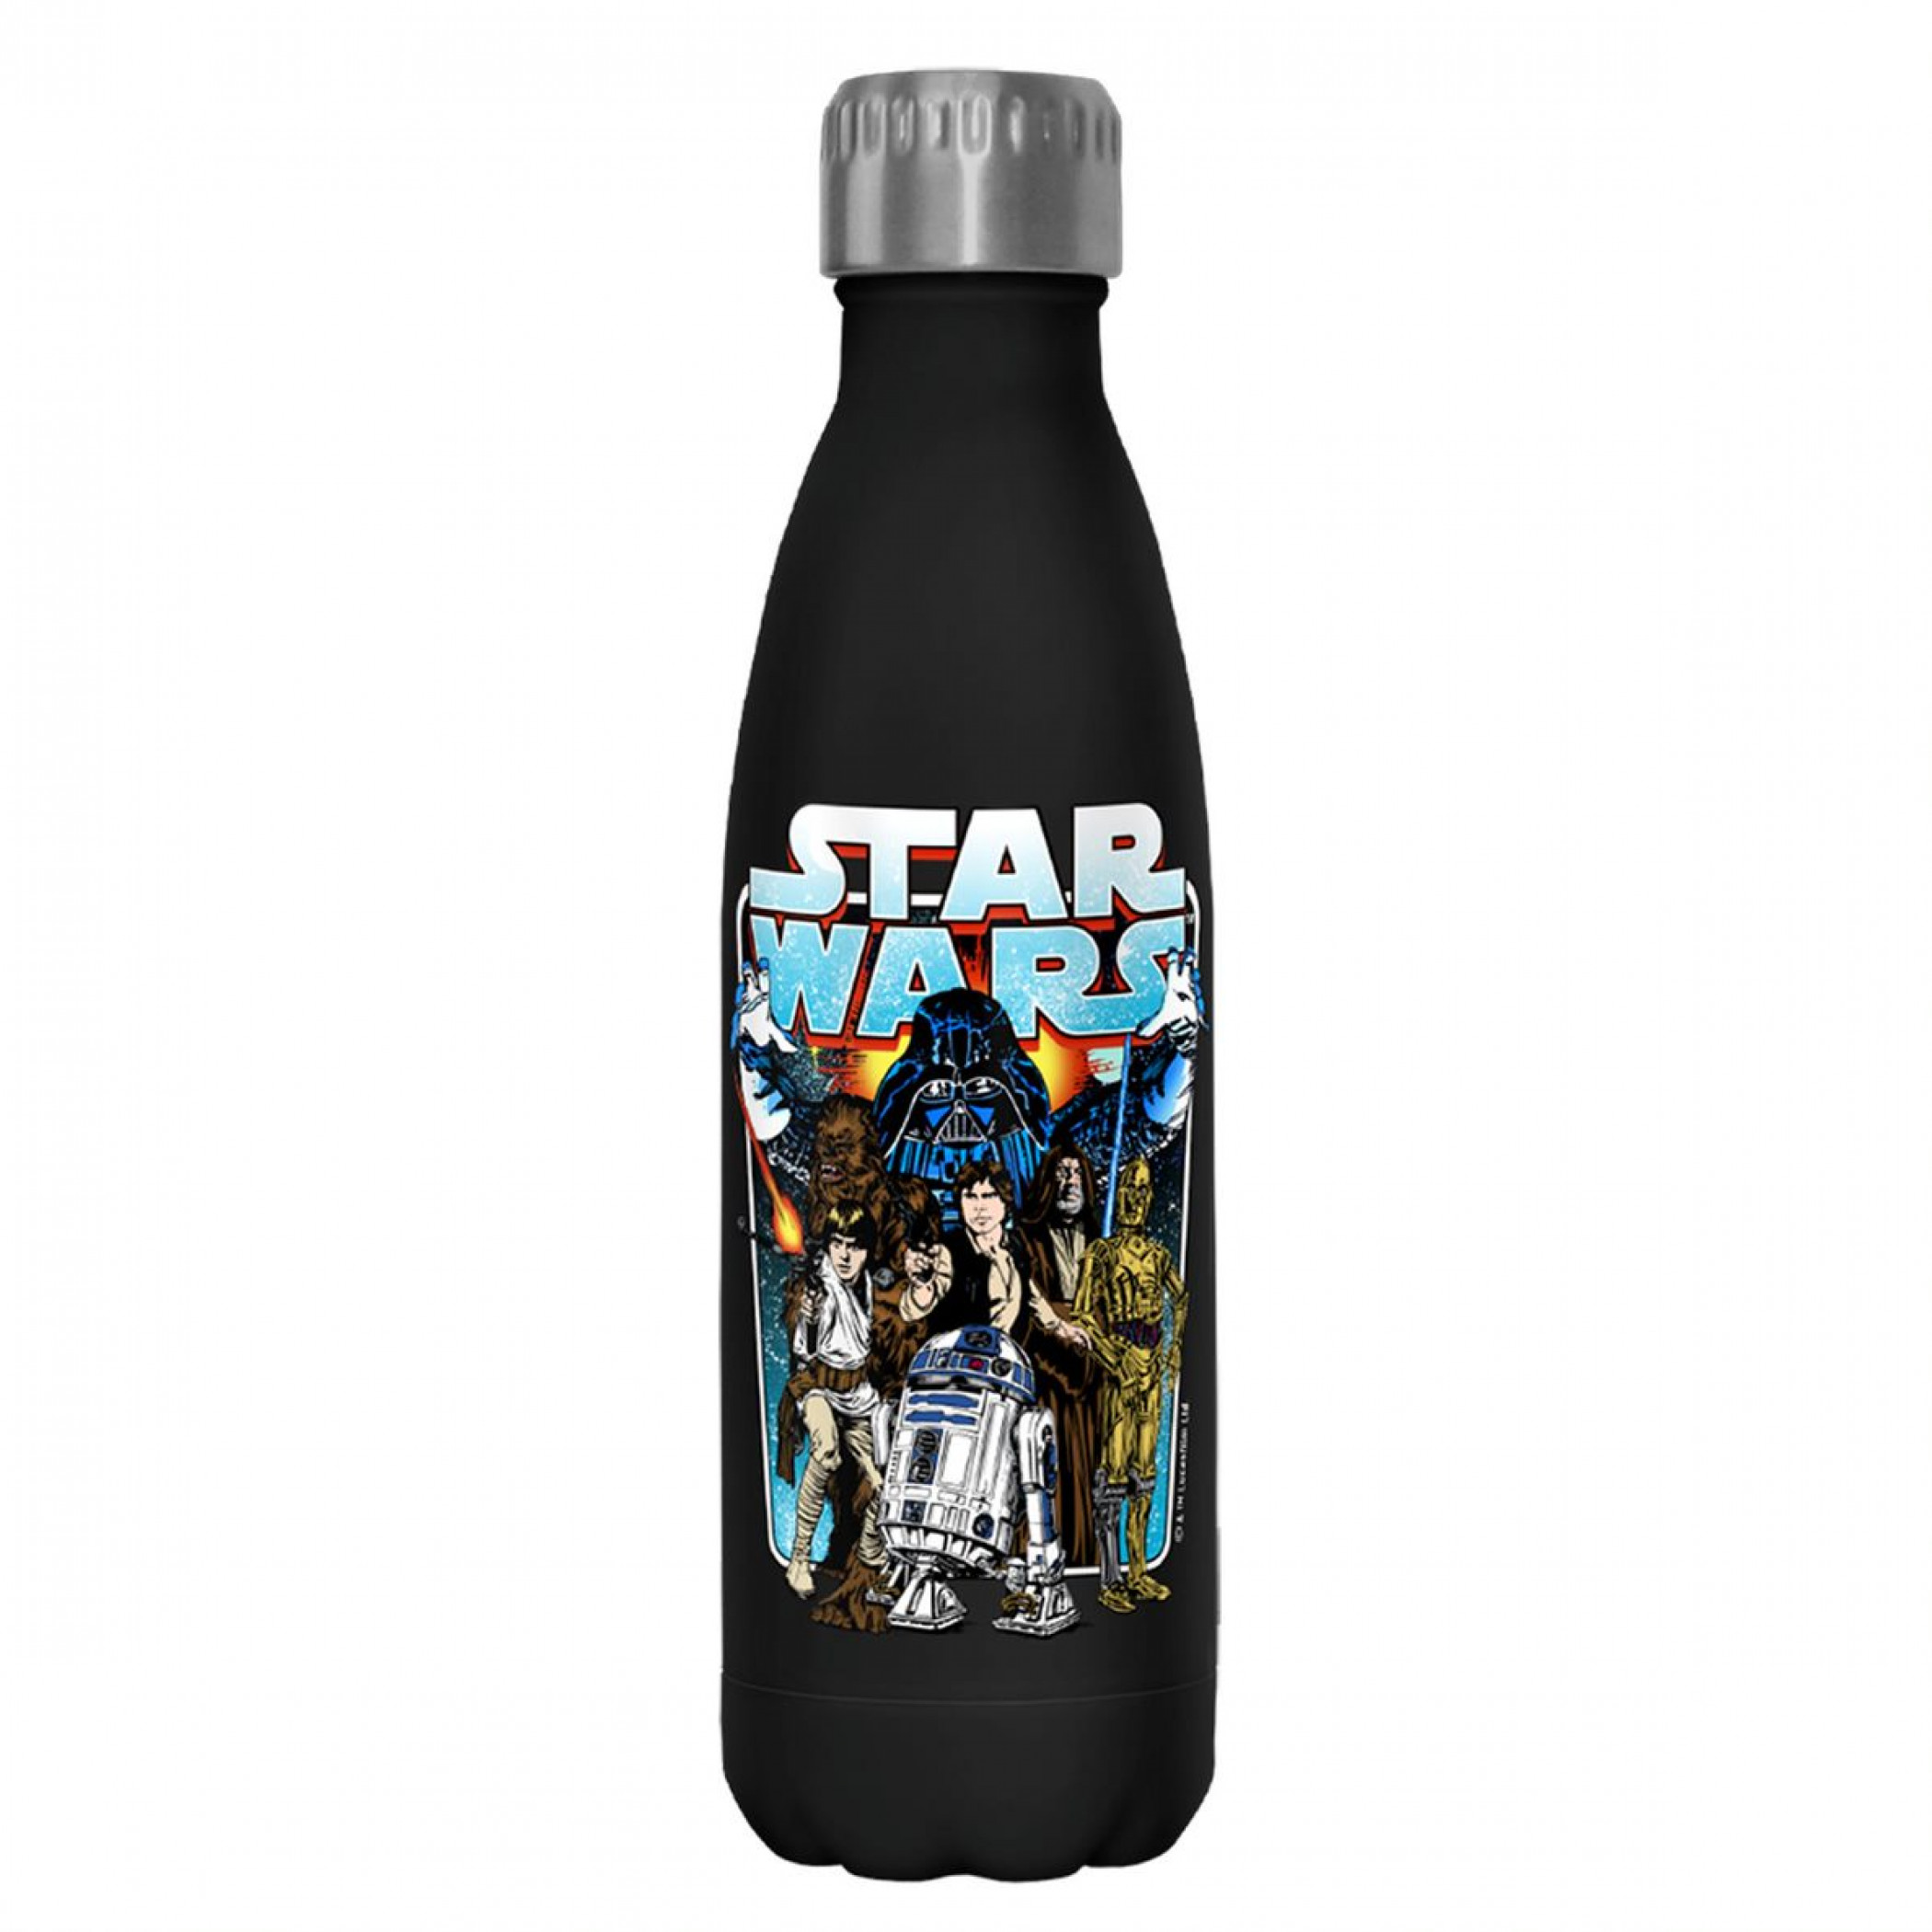 Star Wars Classic Battle Poster Art 17oz Steel Water Bottle